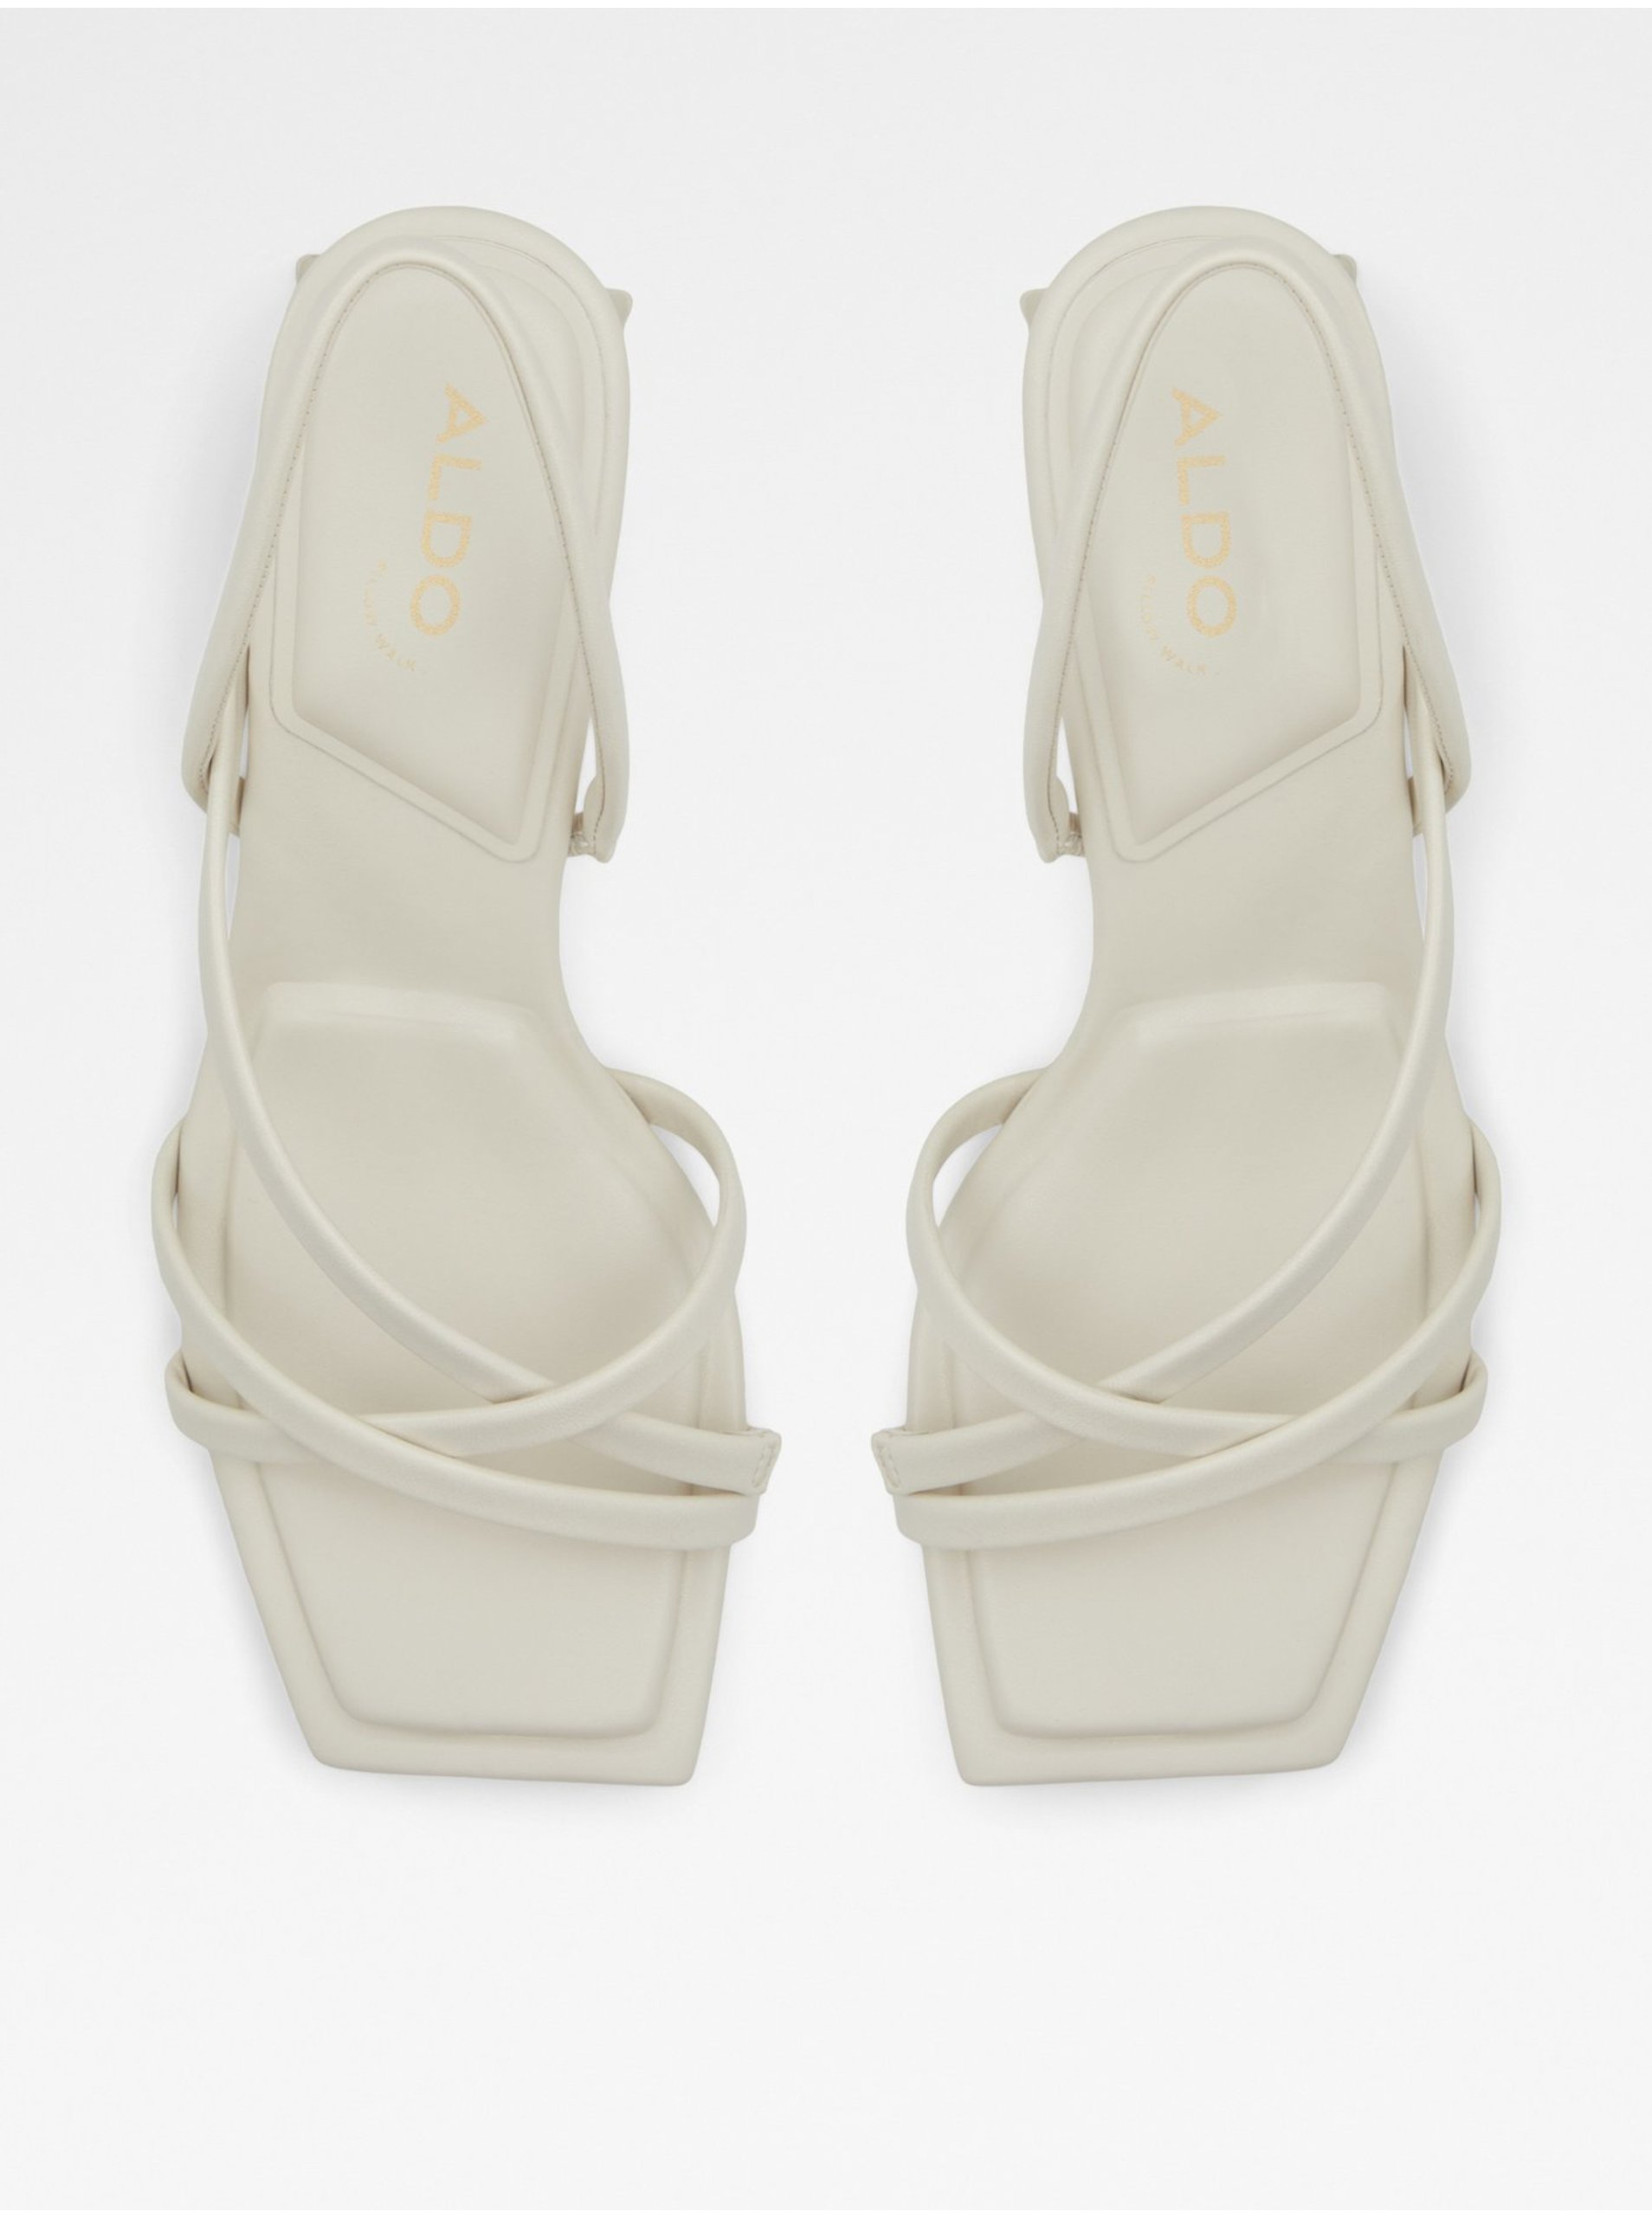 Bílé dámské sandály na nízkém podpatku ALDO Minima